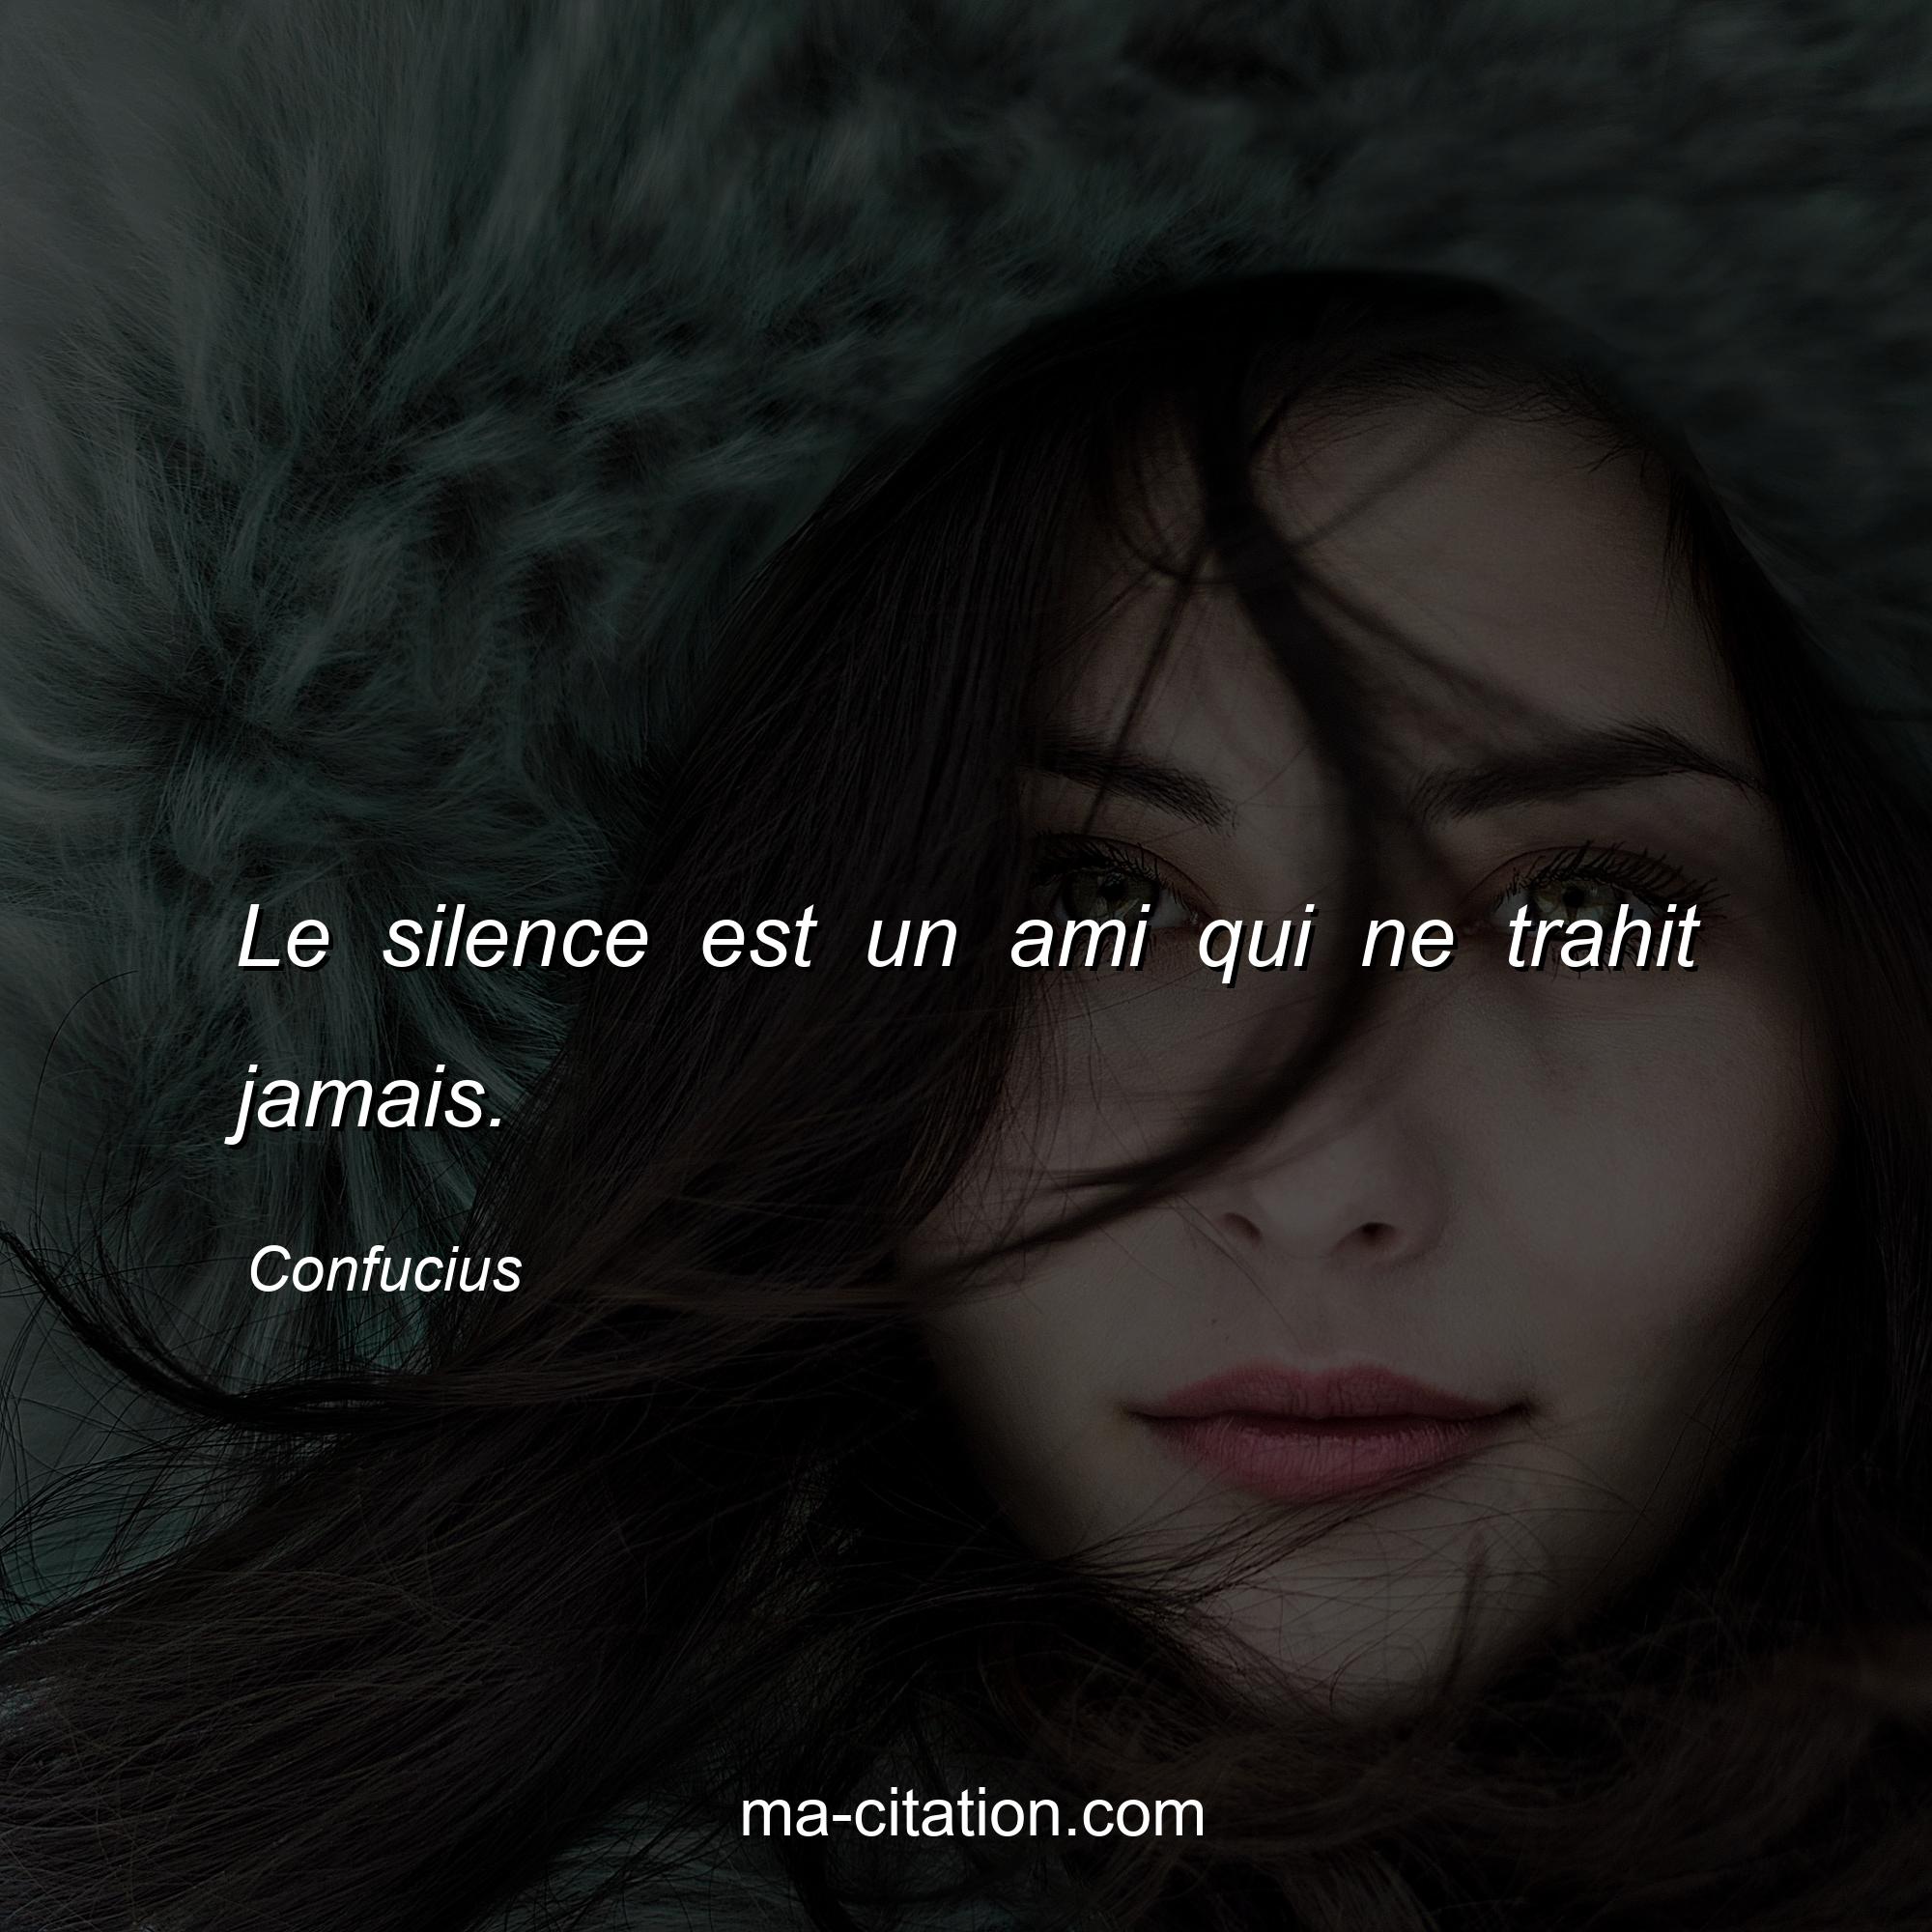 Que Veut Dire Le Silence Est D Or Le silence est un ami qui ne trahit jamais. Confucius. | Ma-Citation.com